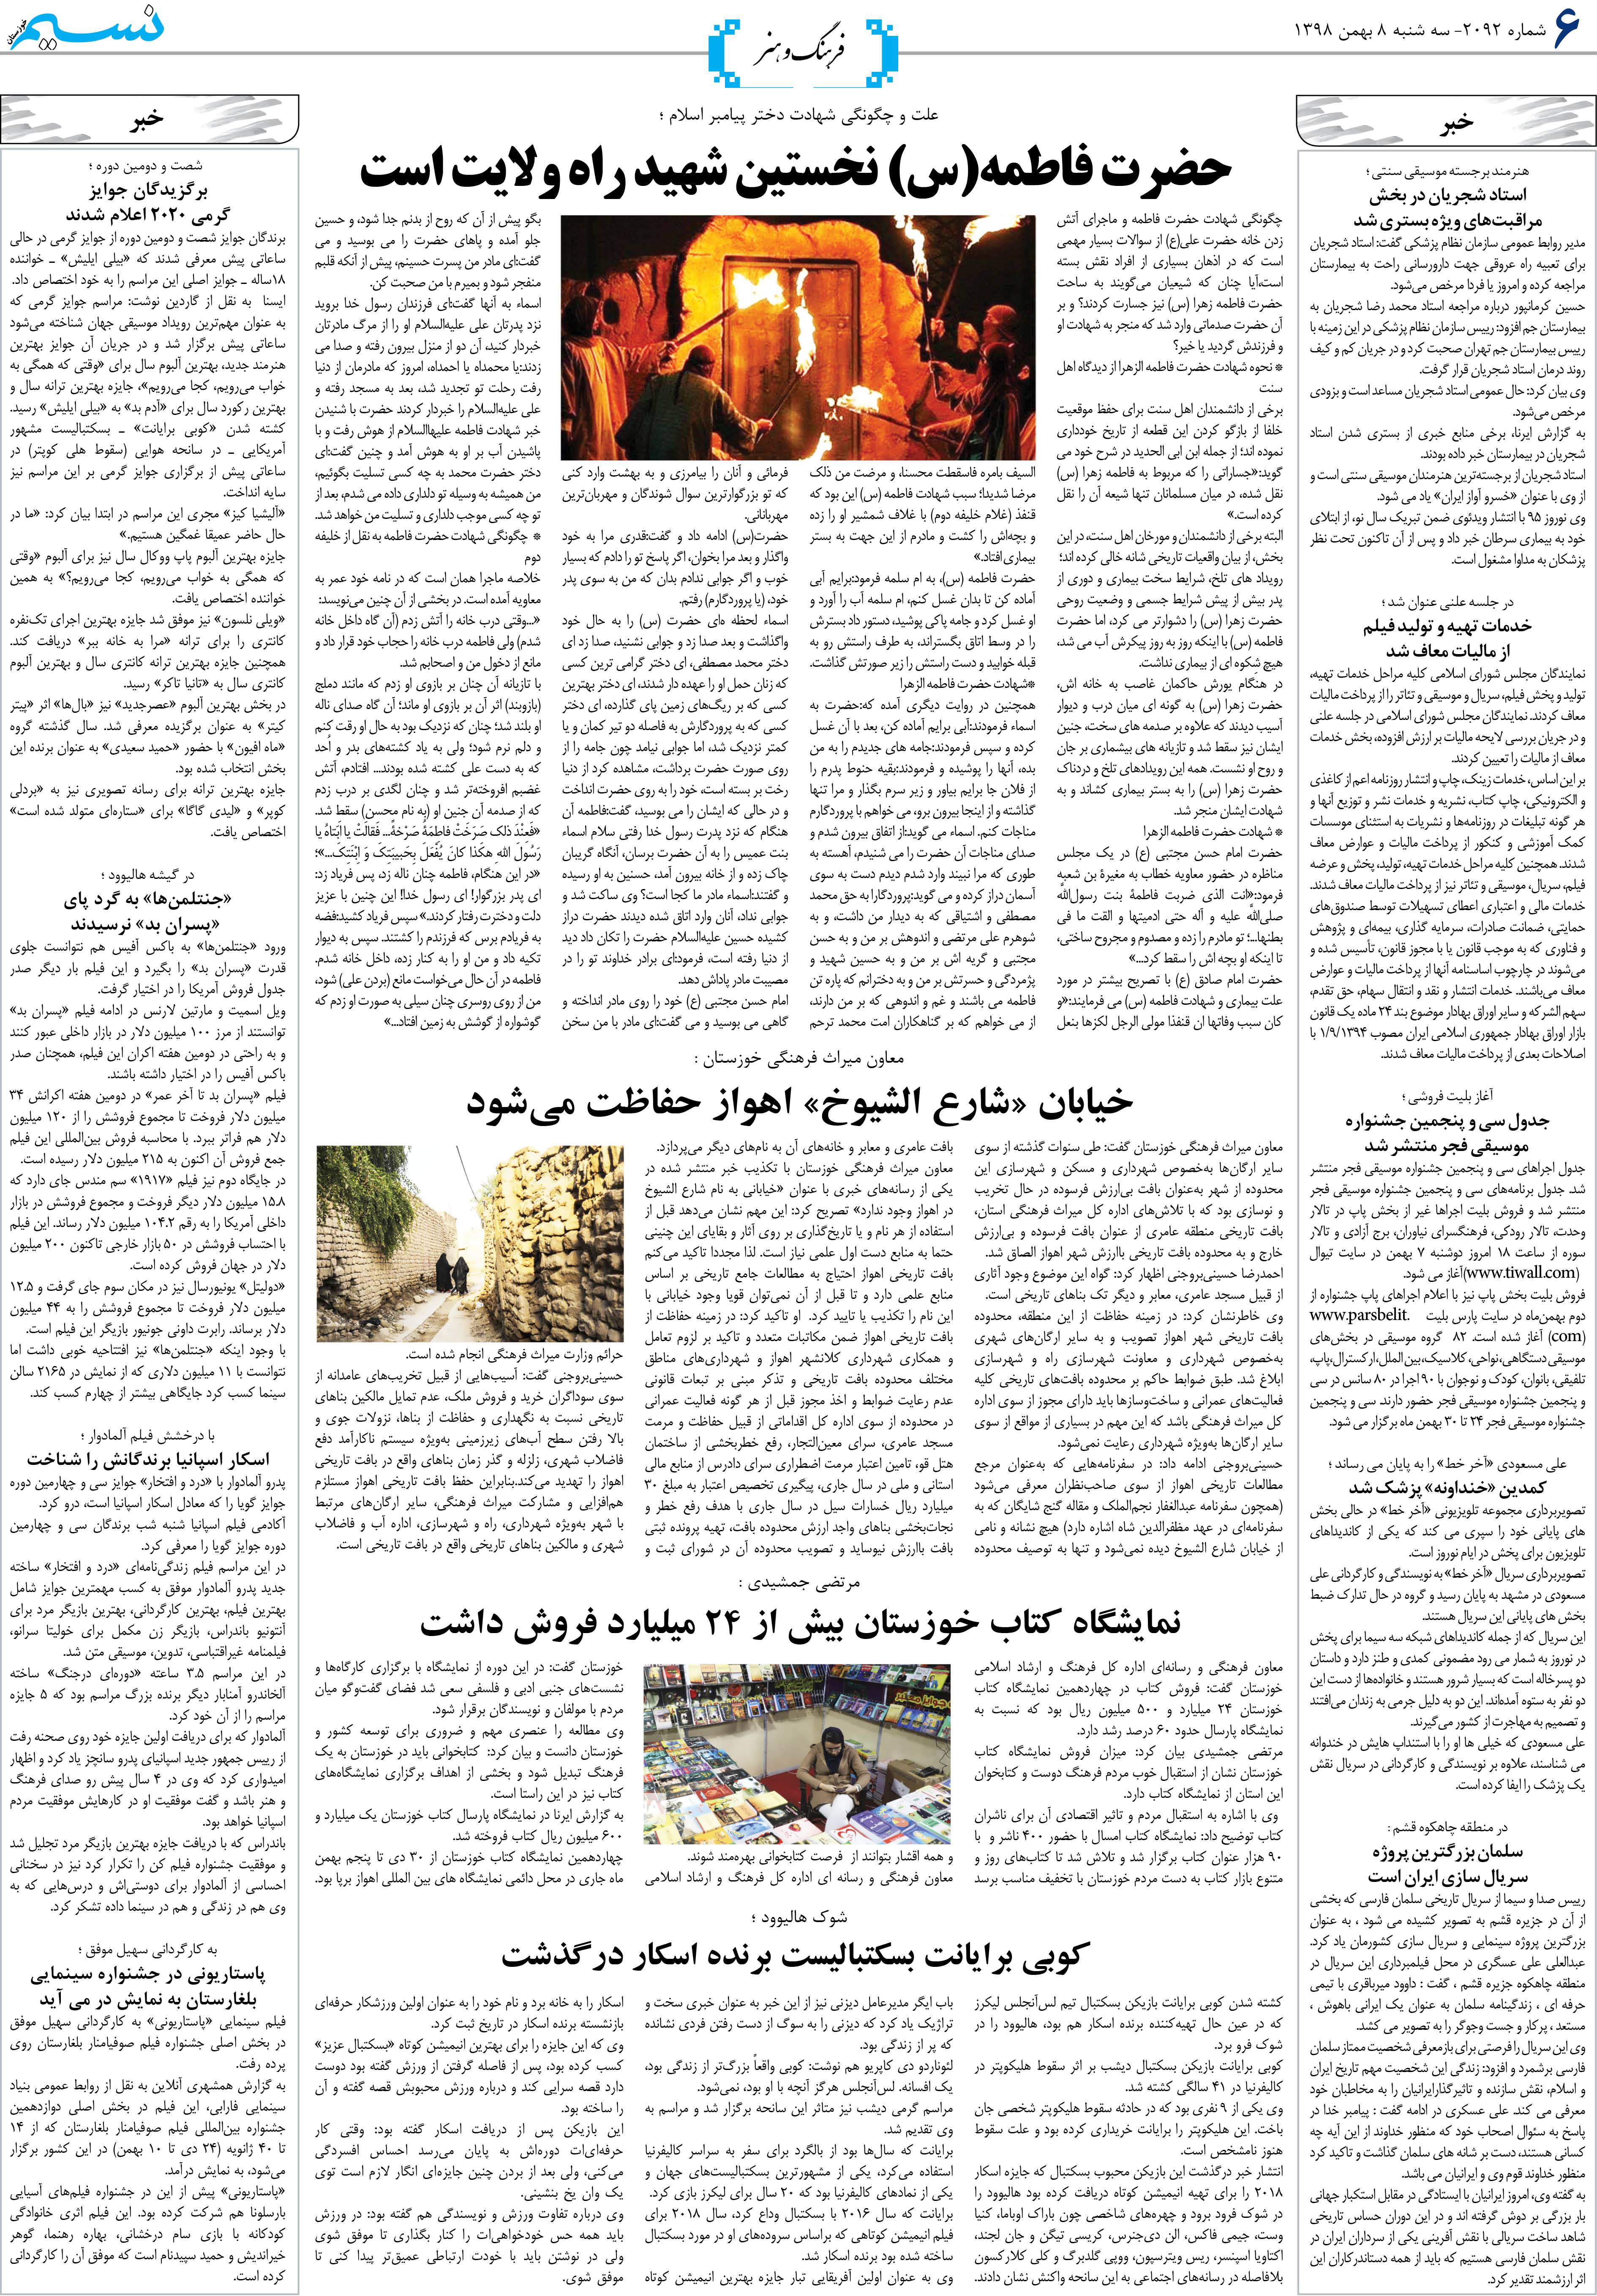 صفحه فرهنگ و هنر روزنامه نسیم شماره 2092